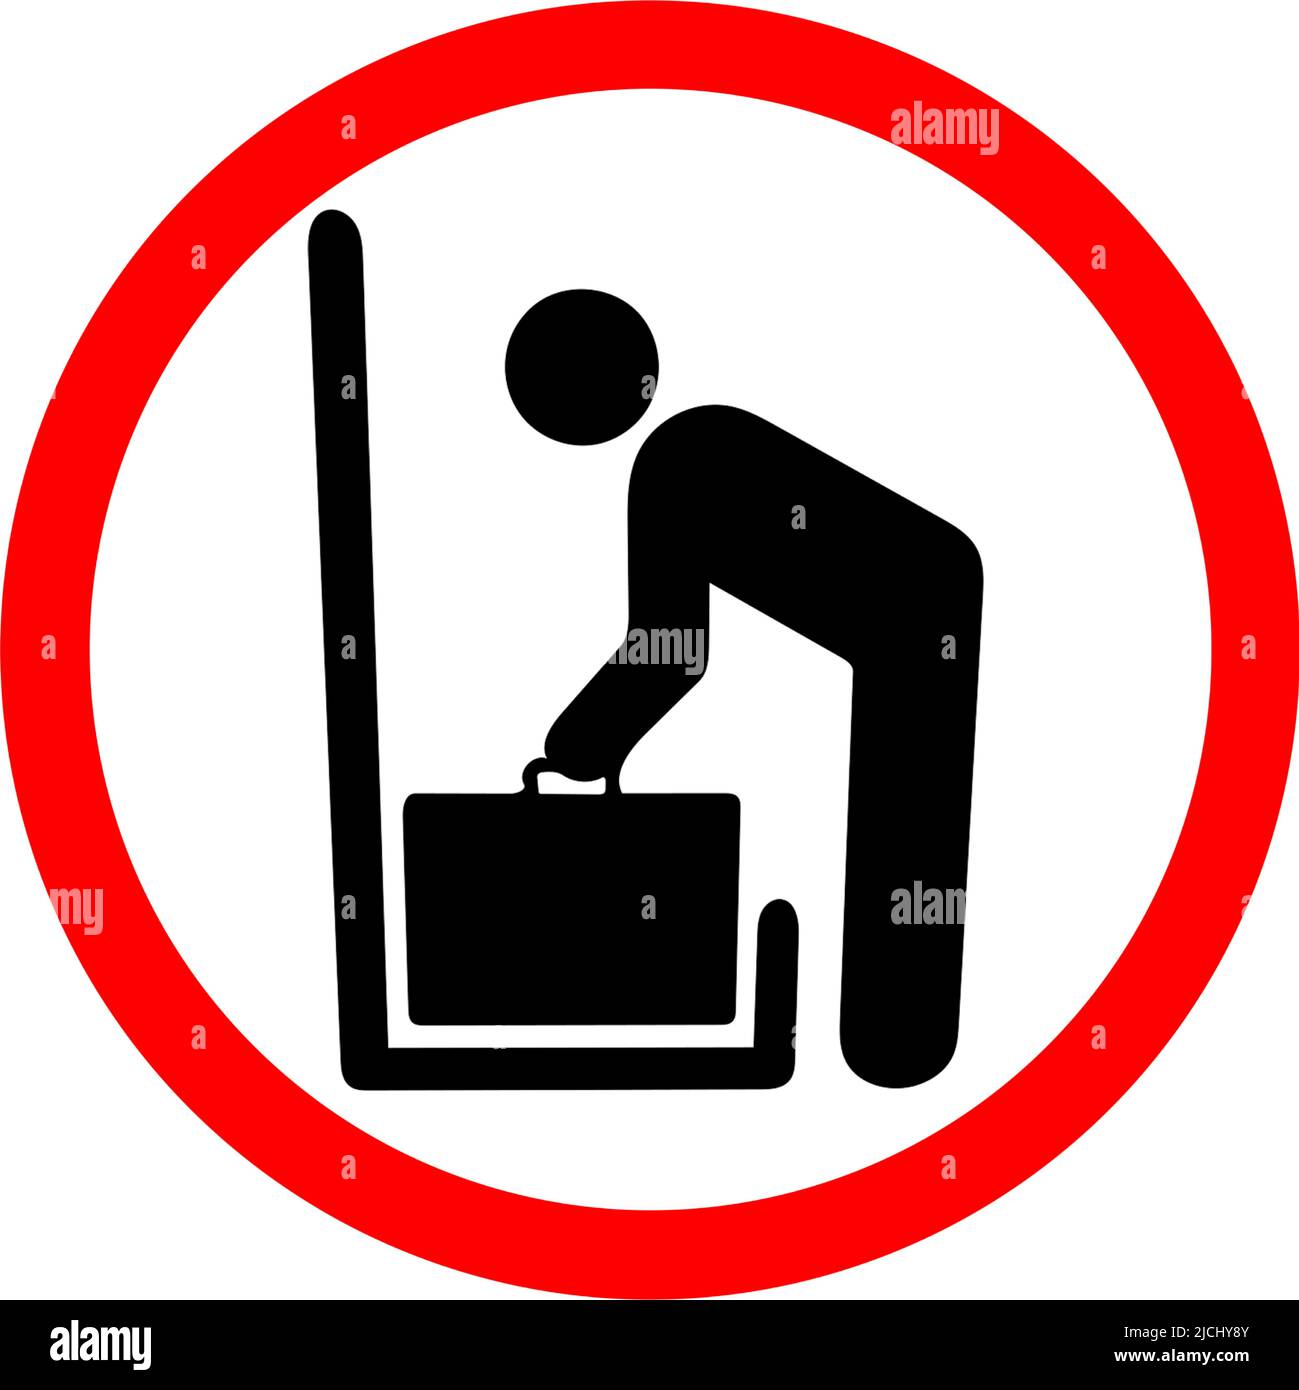 Retrait des bagages, avertissement concernant les bagages lourds, taille des bagages, poids excessif, vérifiez le panneau rouge circulaire d'interdiction Illustration de Vecteur